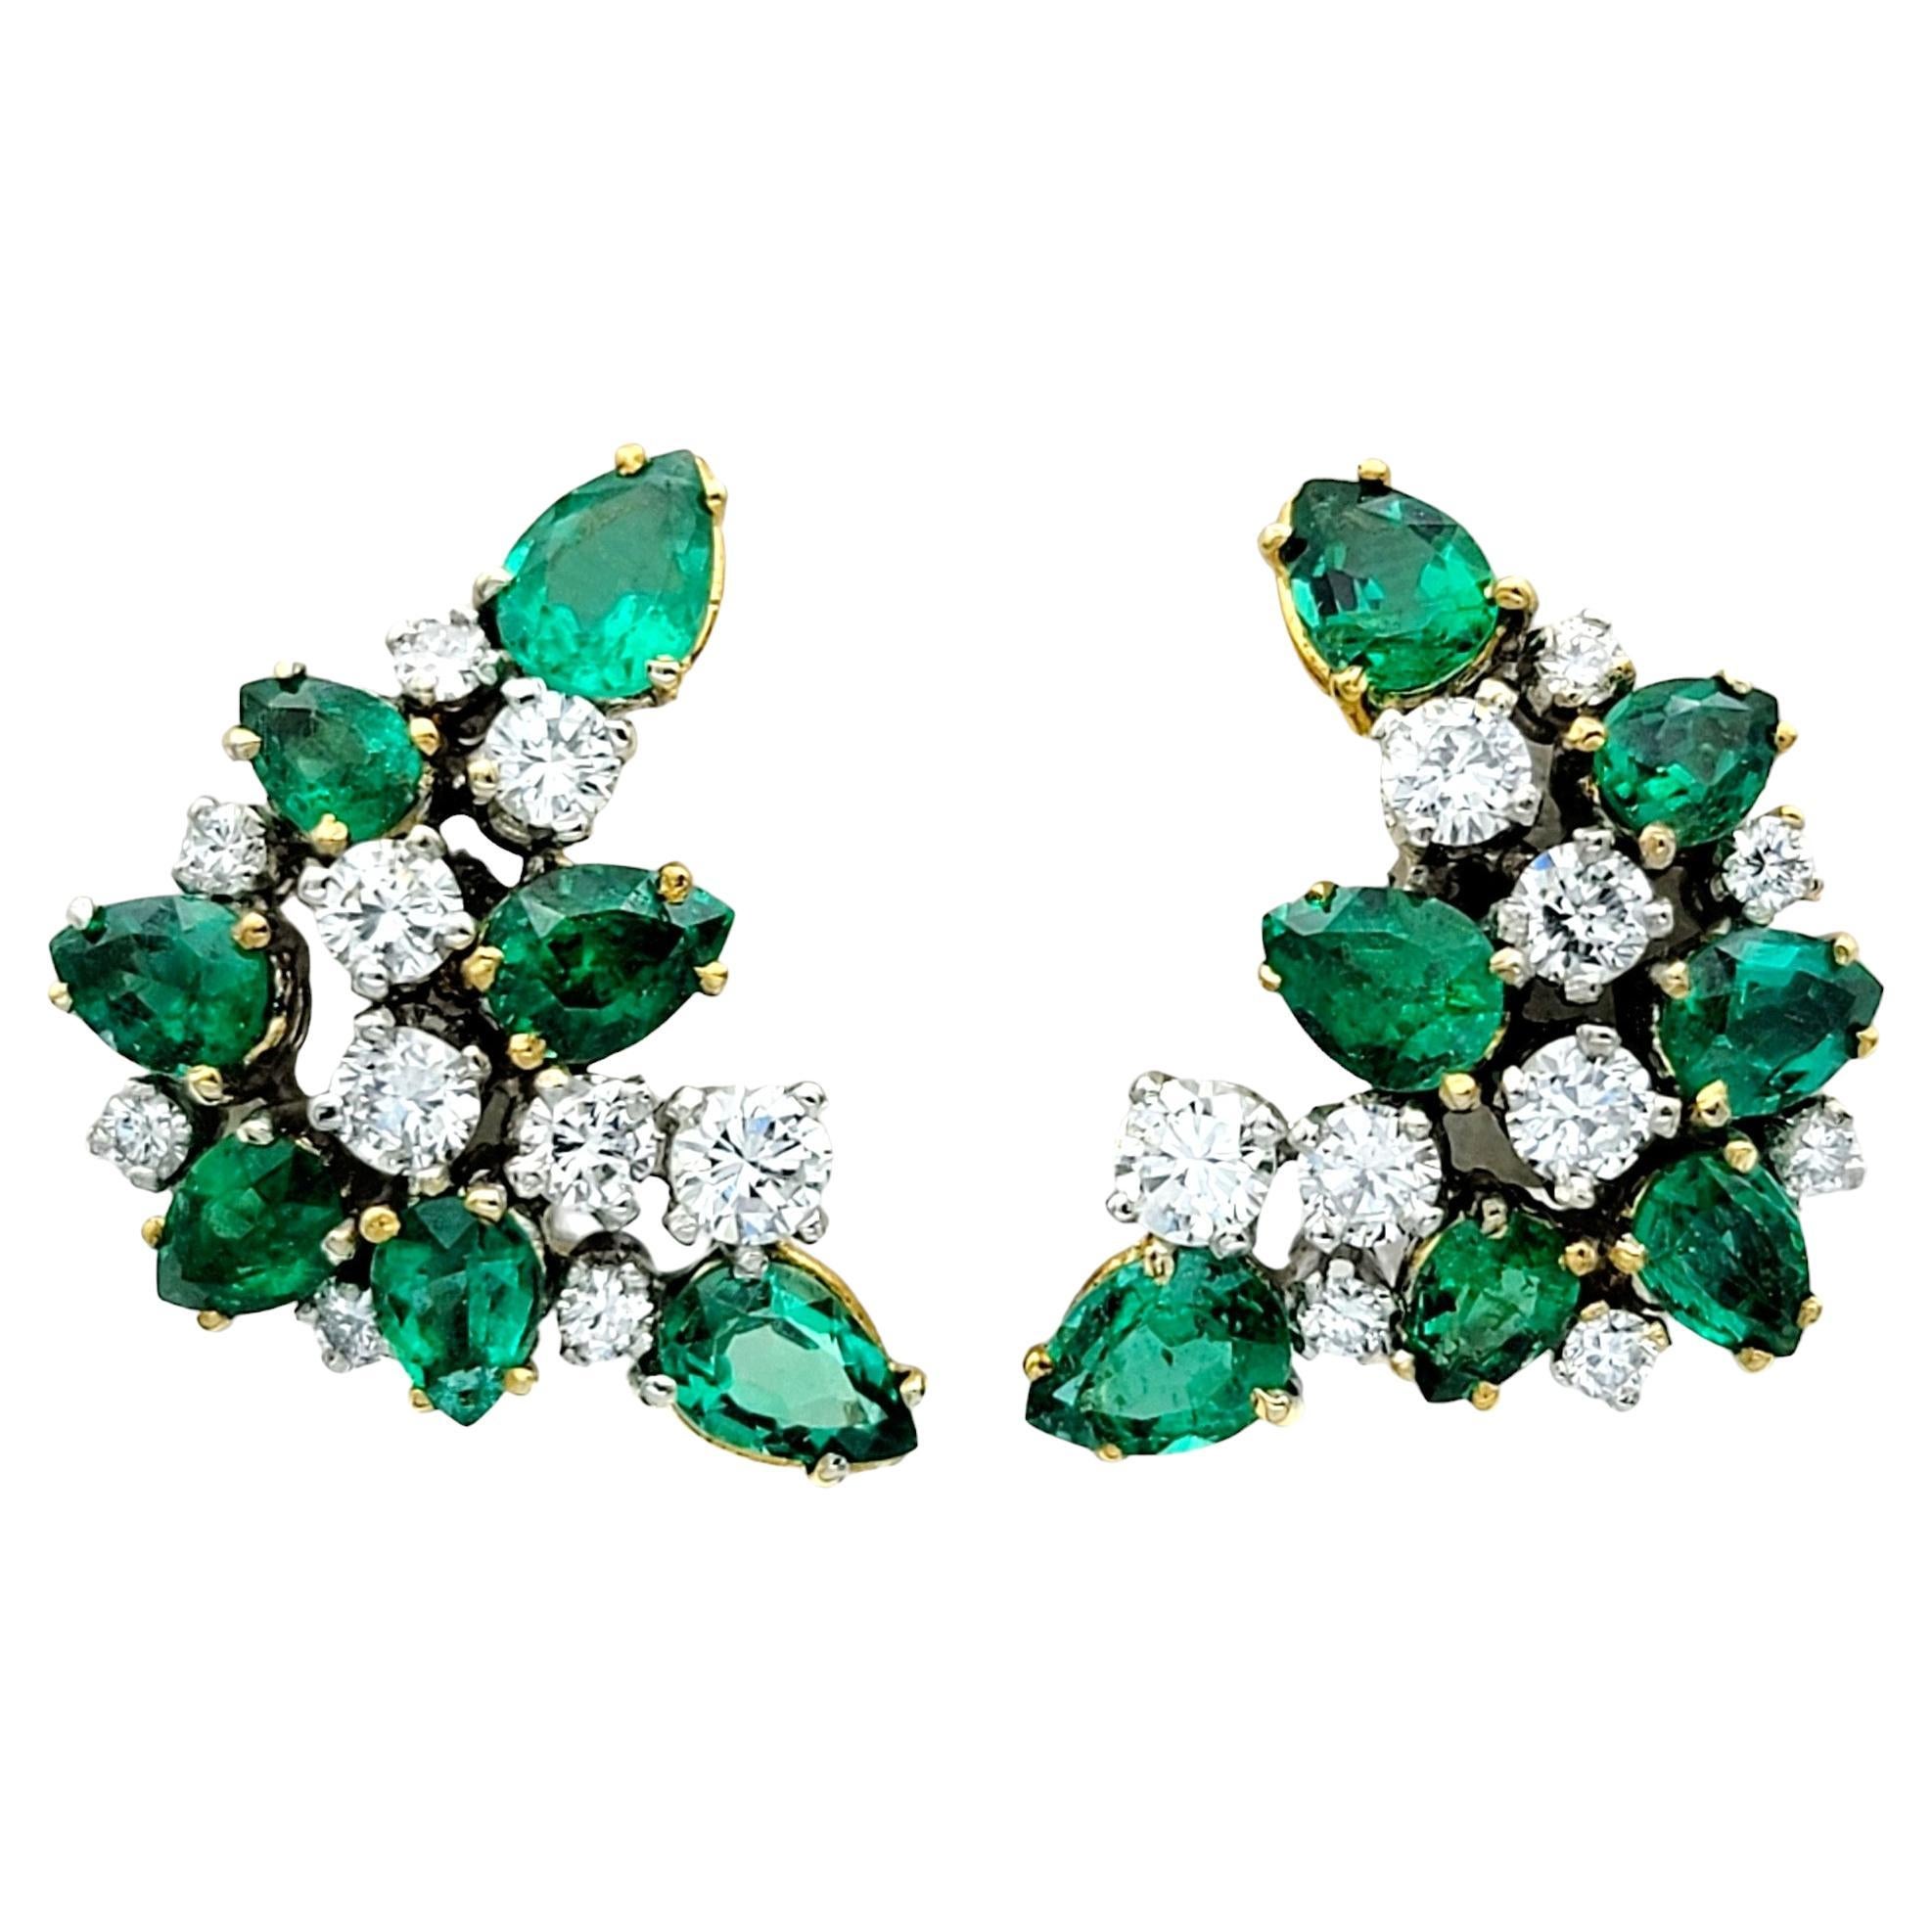 Diese wunderschönen Ohrringe mit Smaragden und Diamanten sind aus strahlendem 18-karätigem Gelbgold gefertigt. Jeder Ohrring besteht aus einer faszinierenden Ansammlung leuchtend grüner Smaragde im Birnenschliff, gepaart mit schillernden runden